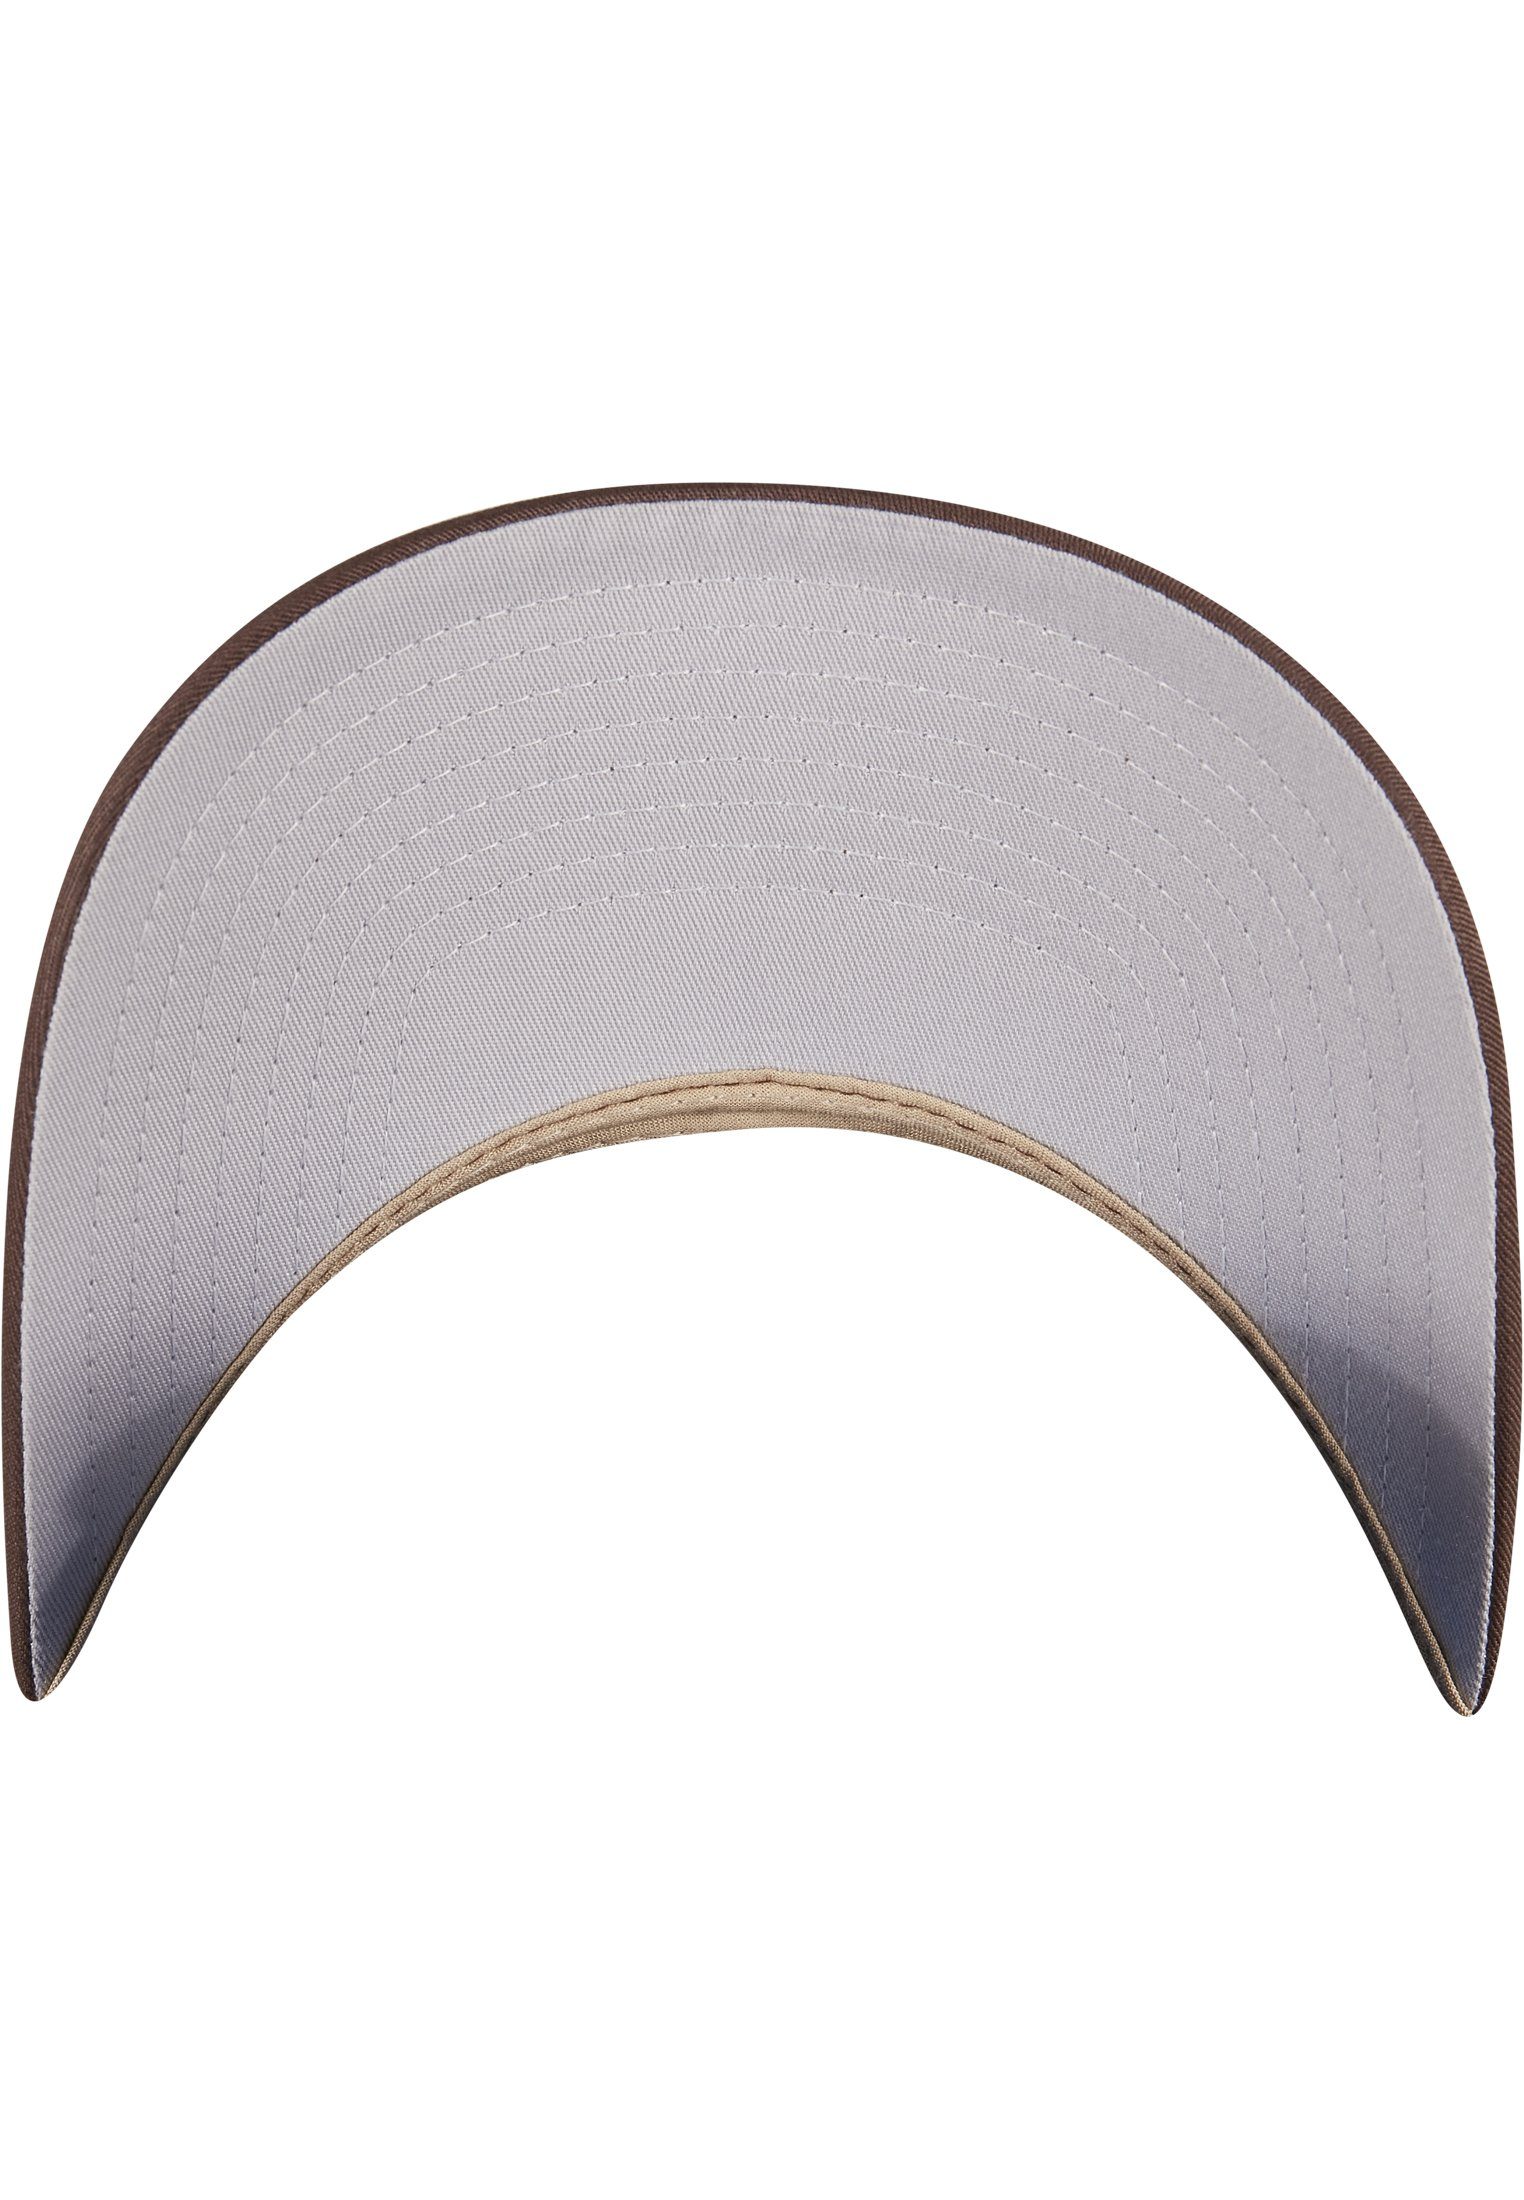 2-Tone brown/khaki Accessoires Cap Omnimesh 360° Flex Cap Flexfit